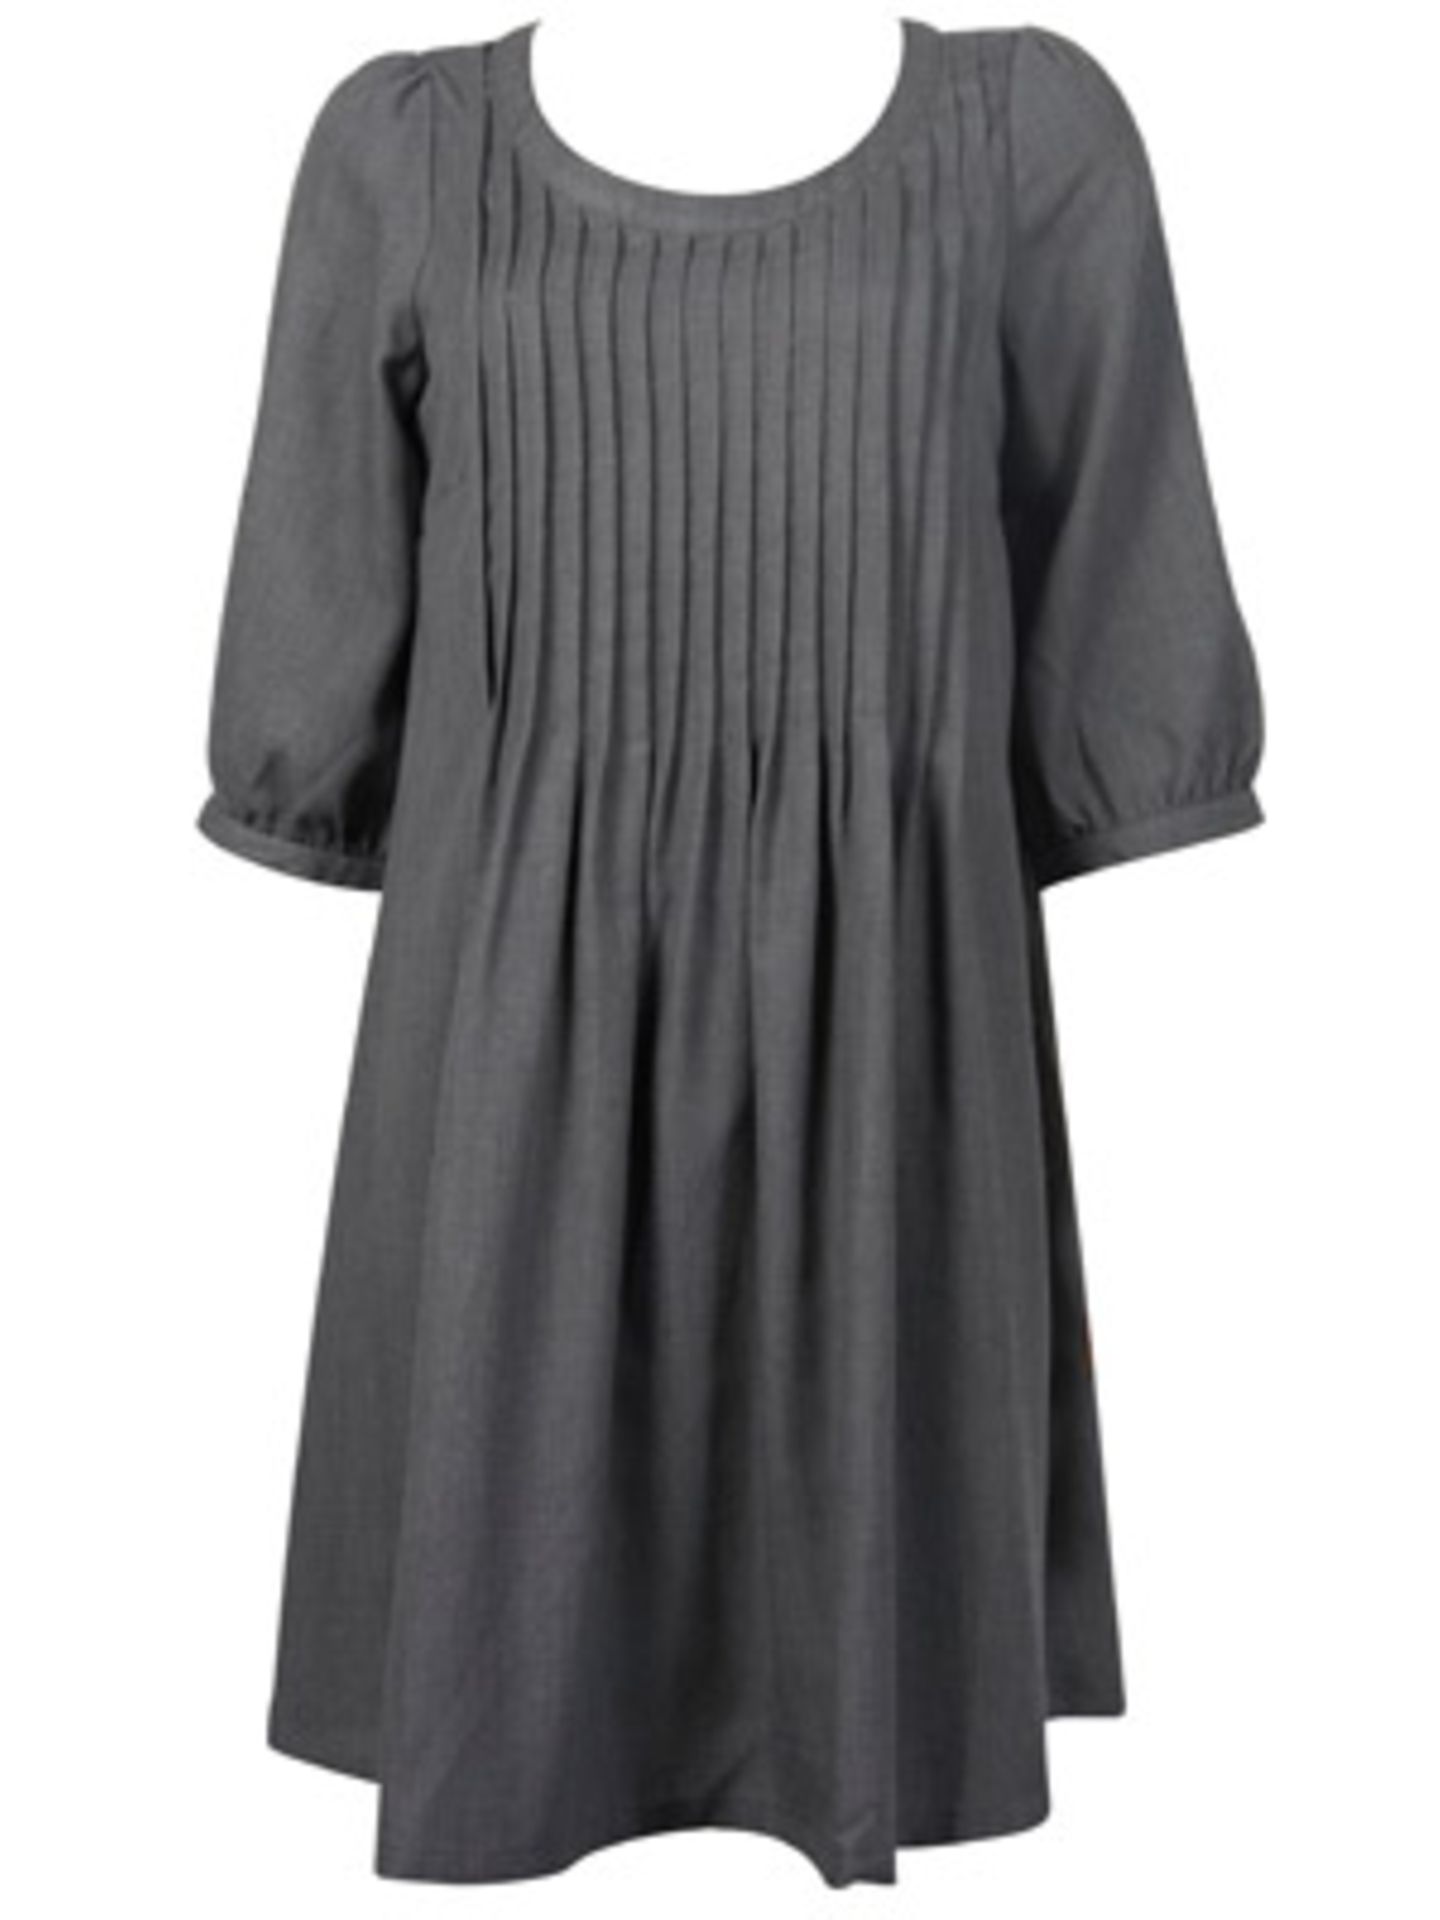 Graues Kleid mit halbem Arm und Plissées am Rundhalsausschnitt von Vero Moda, ca. 50 Euro.